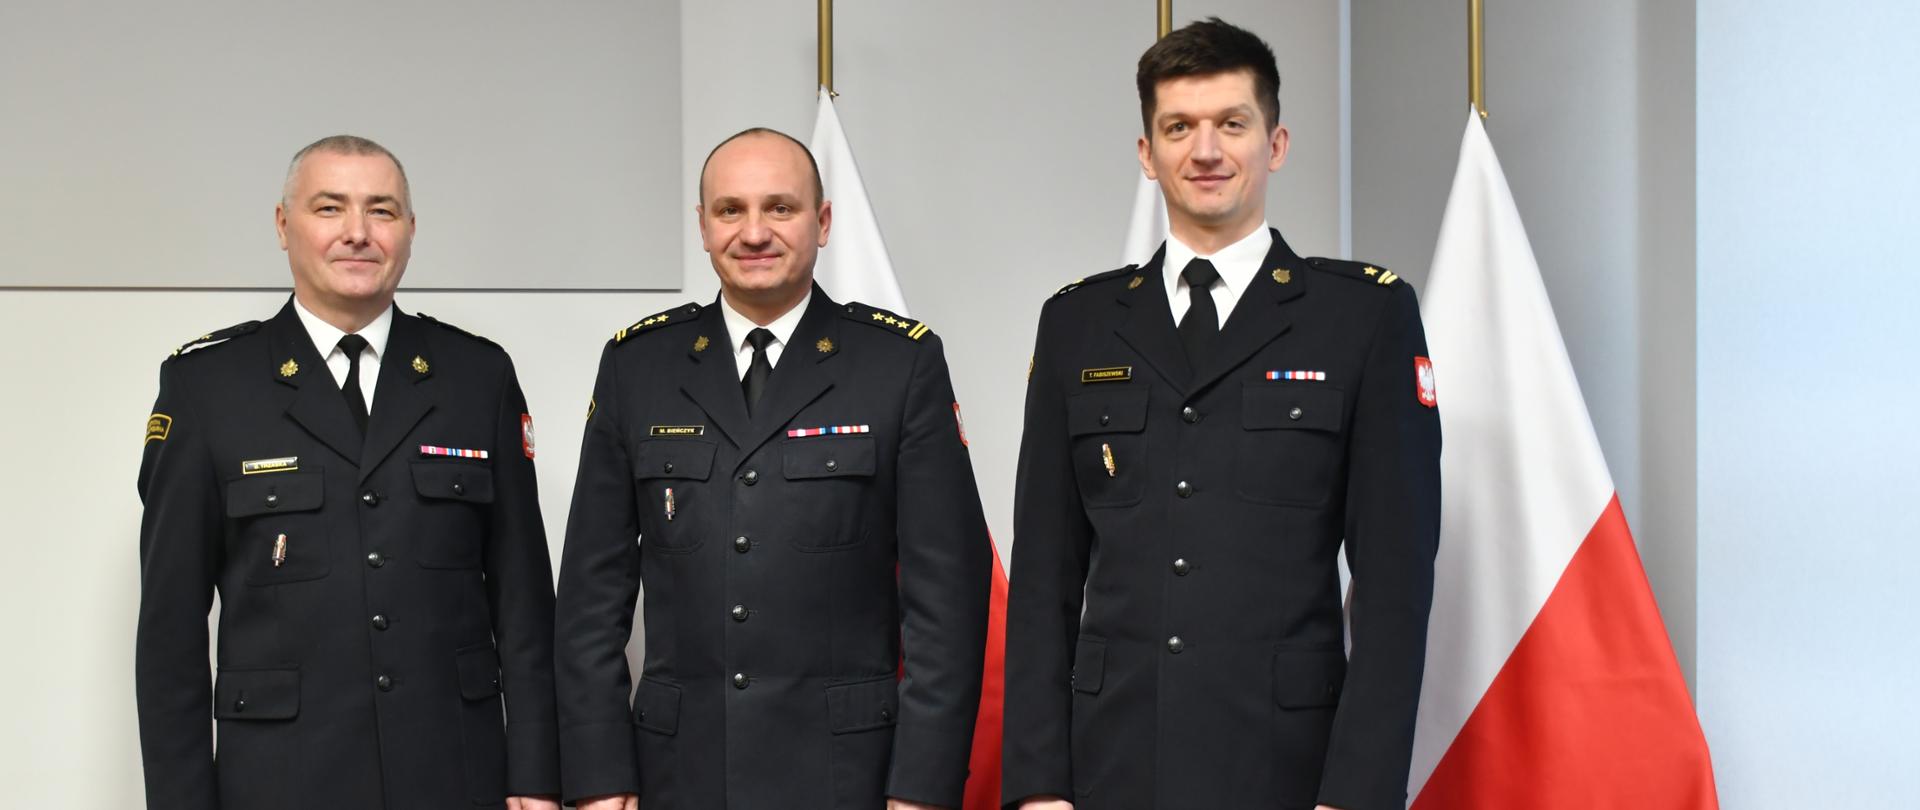 Powierzenie pełnienia obowiązków służbowych na stanowisku Komendanta Miejskiego Państwowej Straży Pożarnej w Ostrołęce - Komendanci na tle flagi narodowej